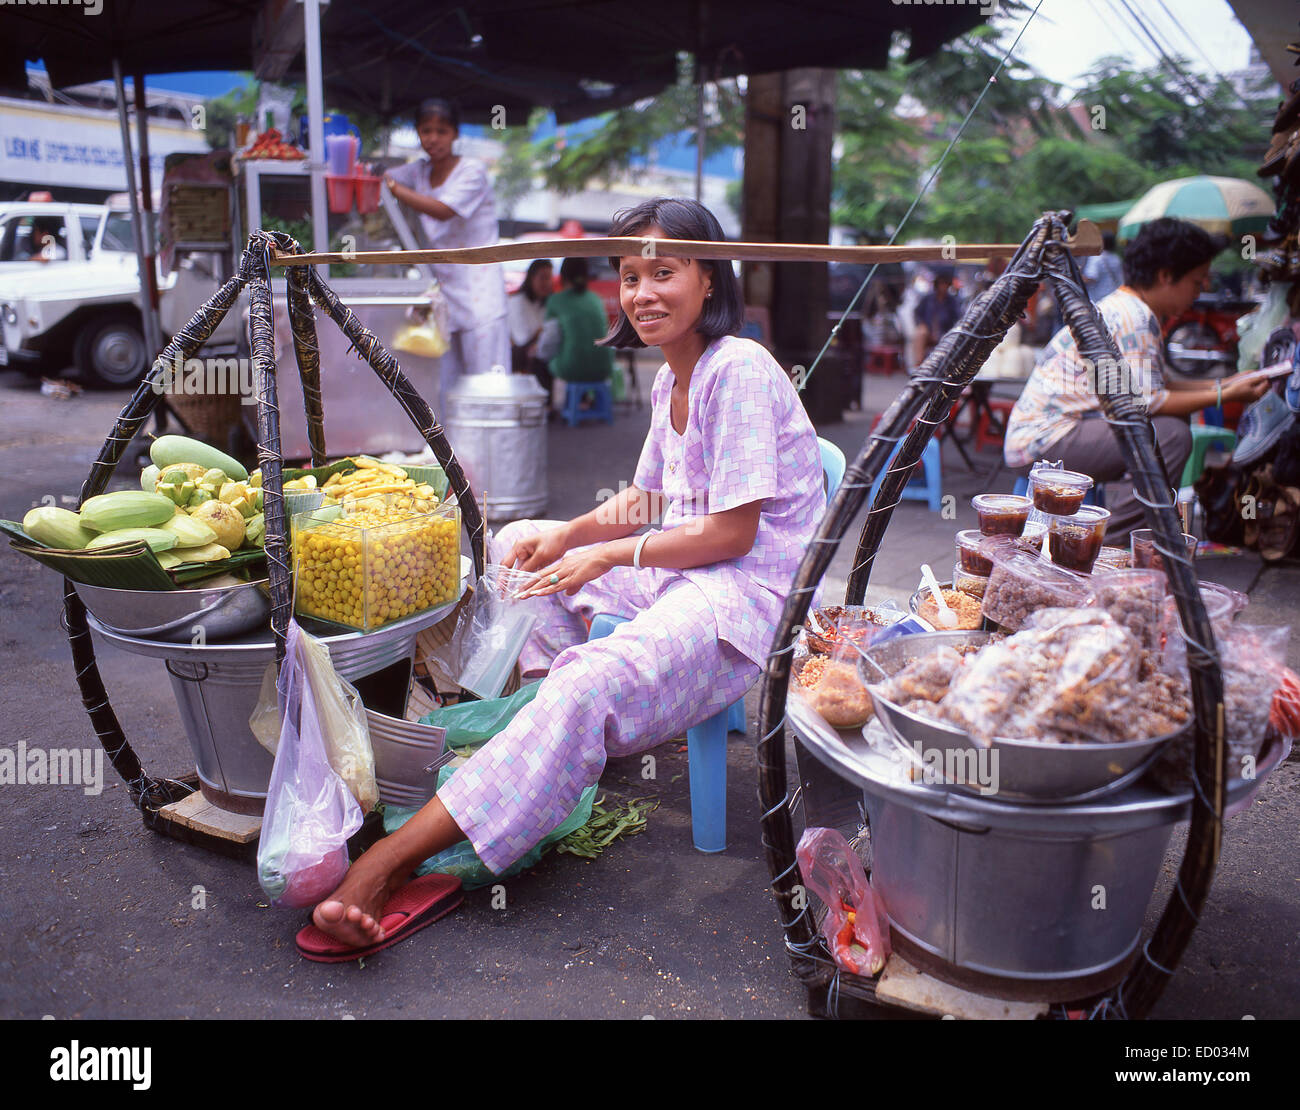 Femme vendant des fruits, Bình Tây Marché, Cholon, District 6, Ho Chi Minh Ville (Saigon), République socialiste du Vietnam Banque D'Images